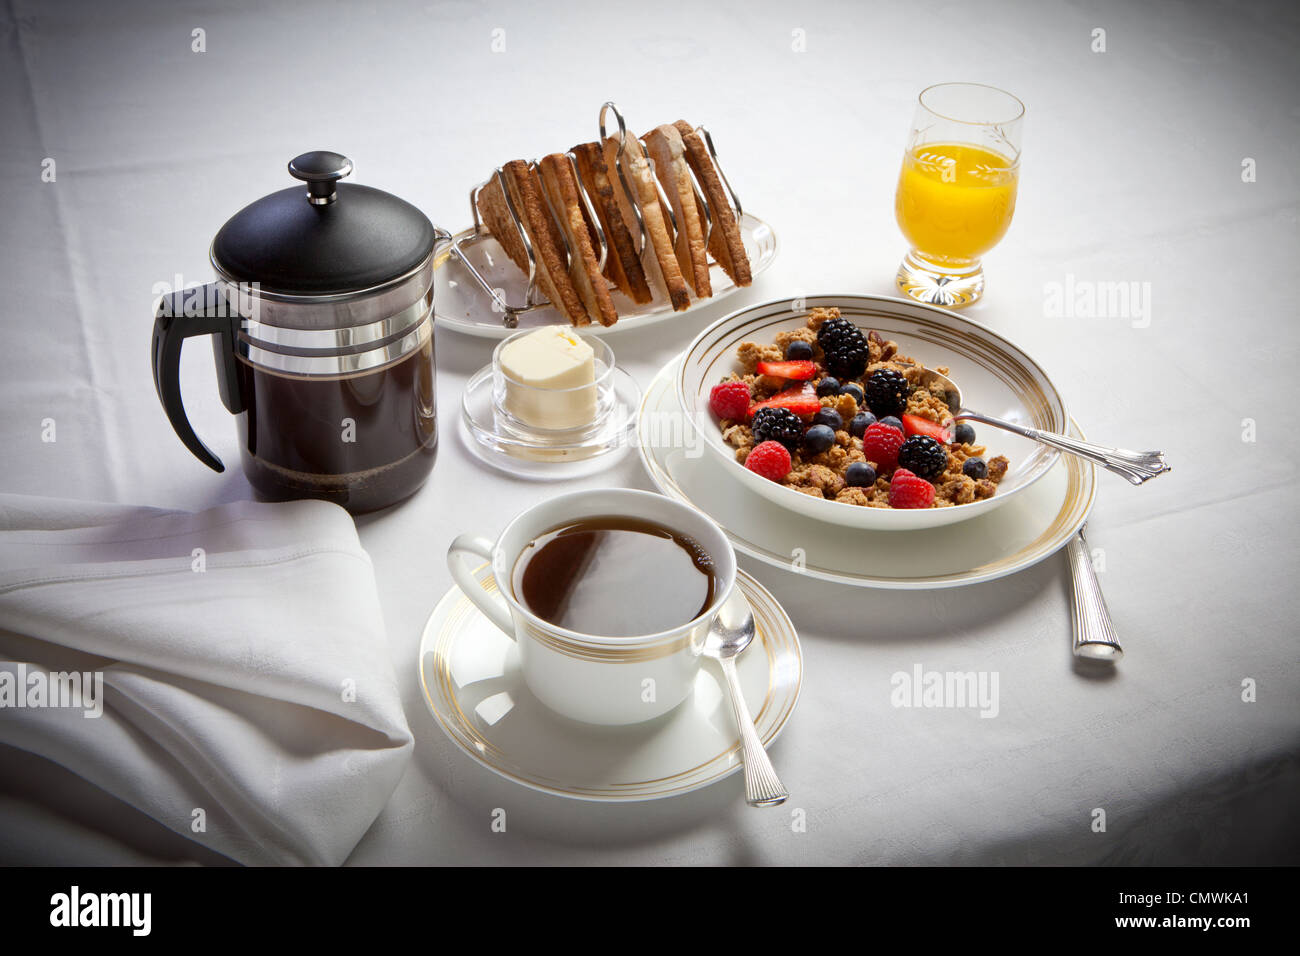 Desayuno continental con café y tostadas, cereales jugo establecidas sobre un mantel de lino blanco Foto de stock